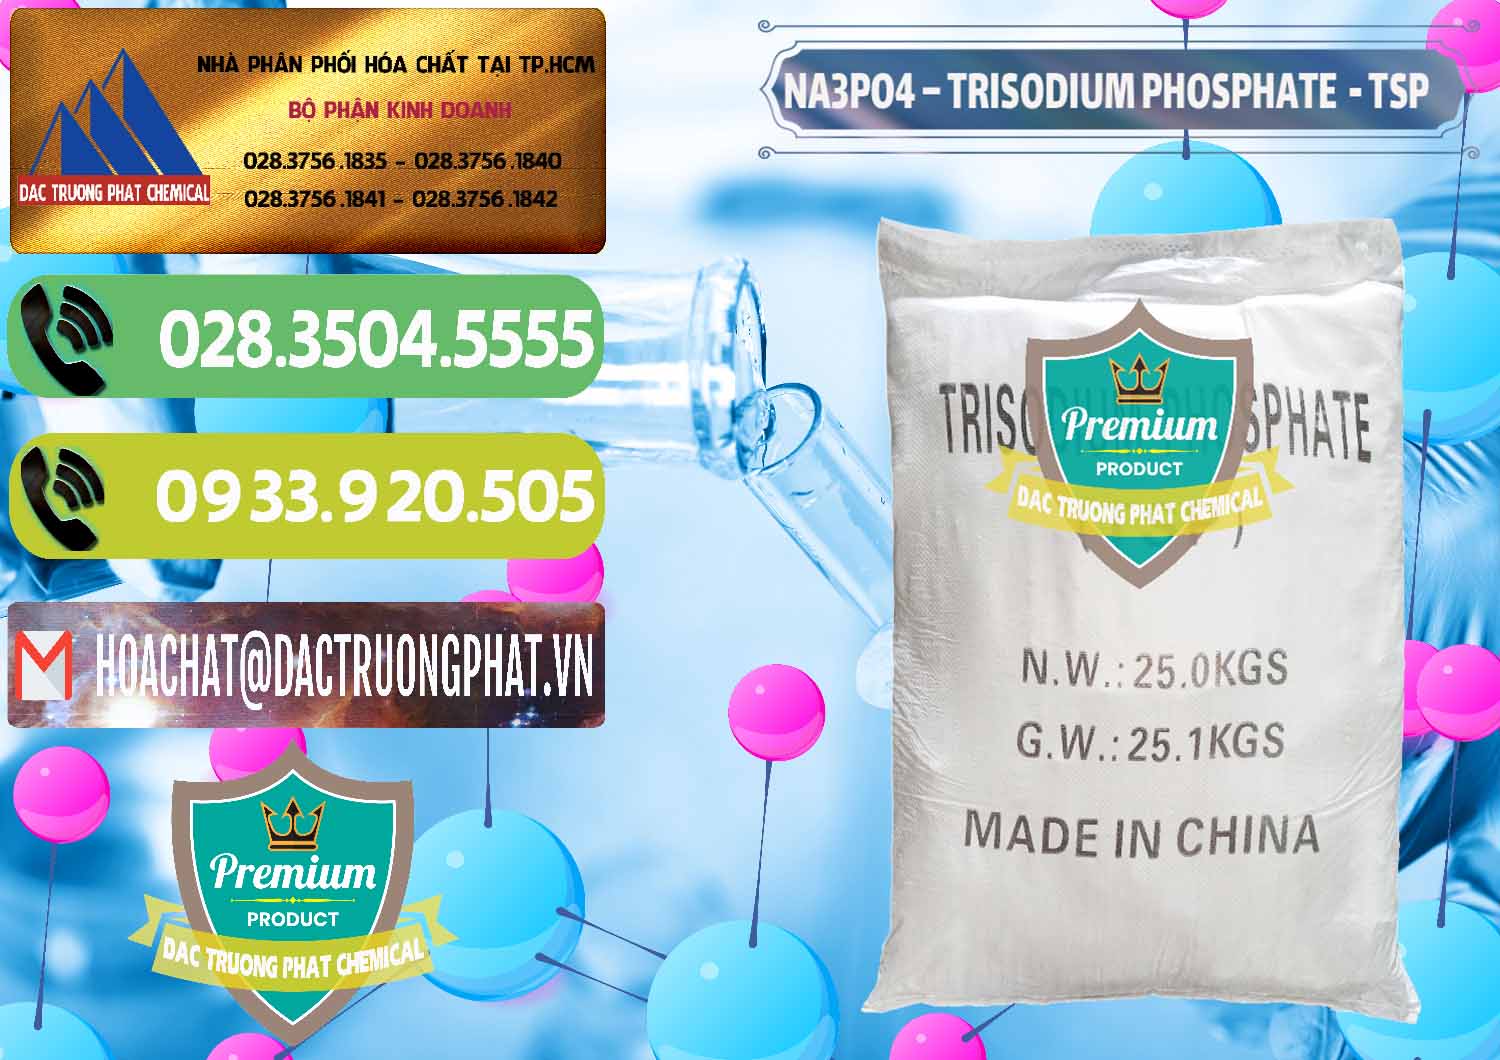 Cty chuyên bán & phân phối Na3PO4 – Trisodium Phosphate Trung Quốc China TSP - 0103 - Cty nhập khẩu & cung cấp hóa chất tại TP.HCM - hoachatmientay.vn